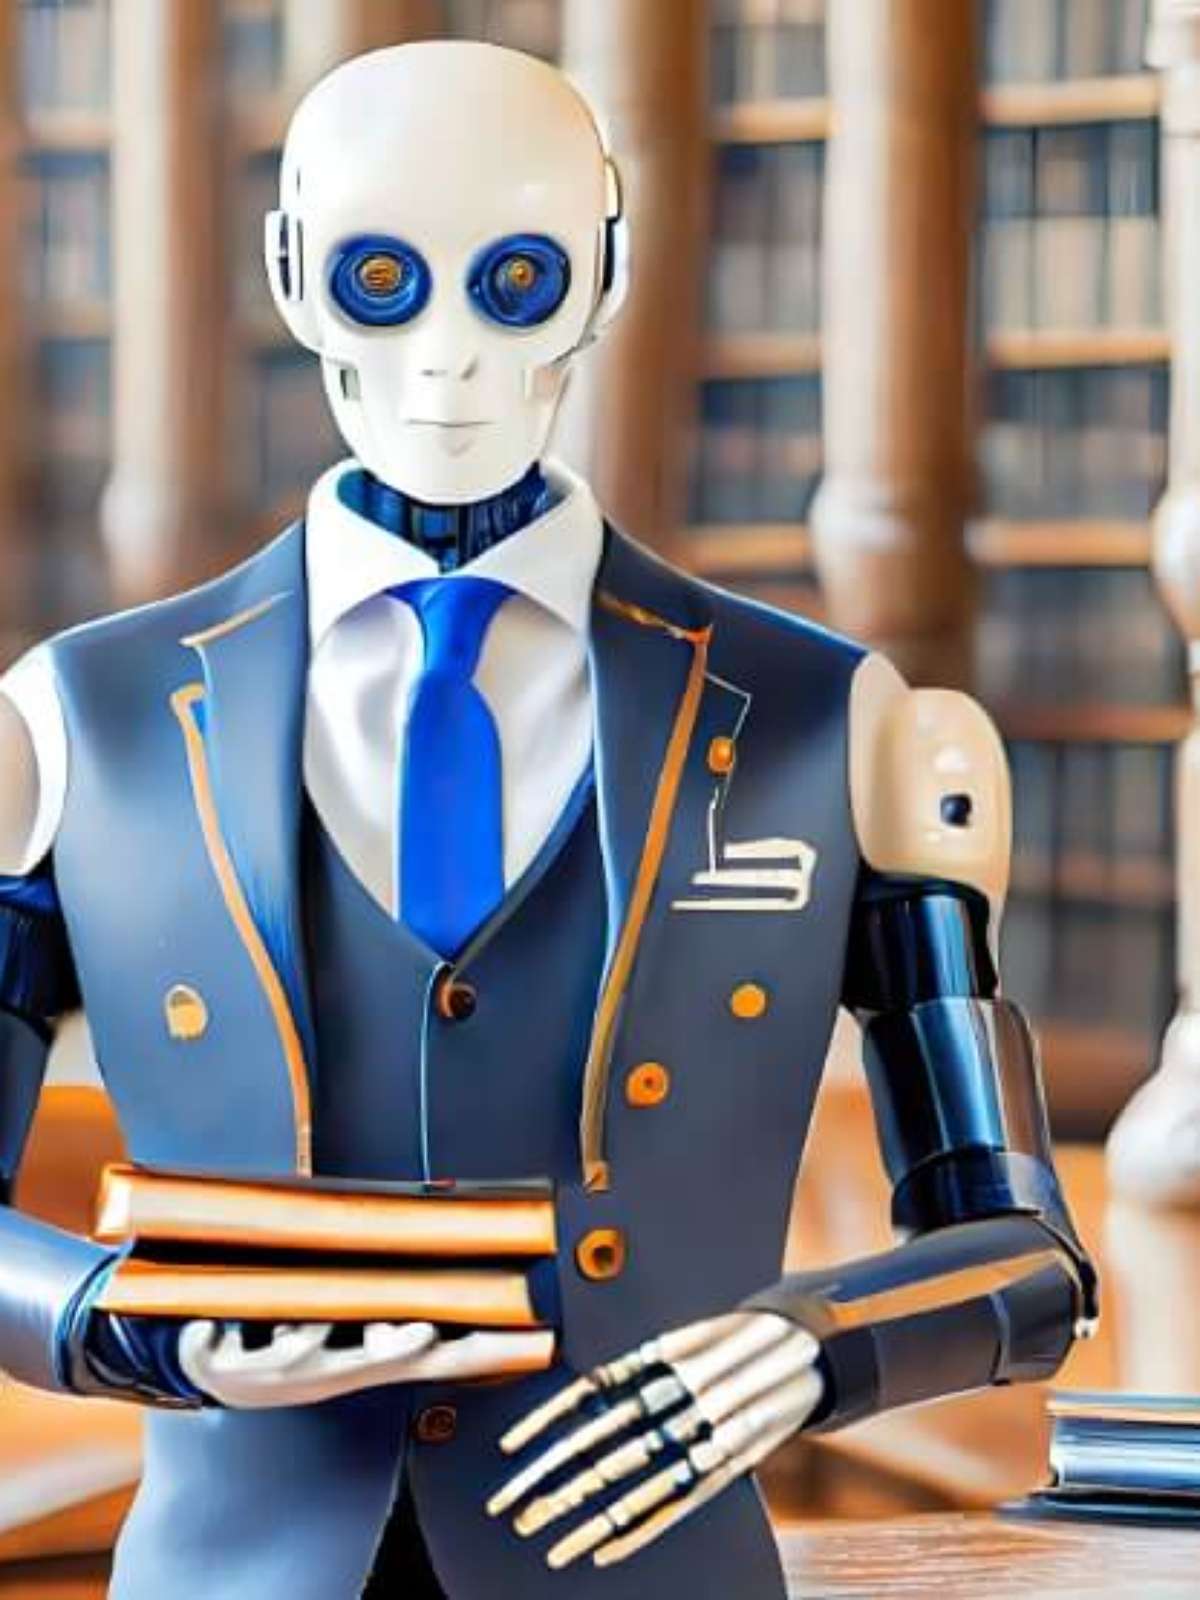 IA generativa pode mesmo substituir a advocacia no futuro?